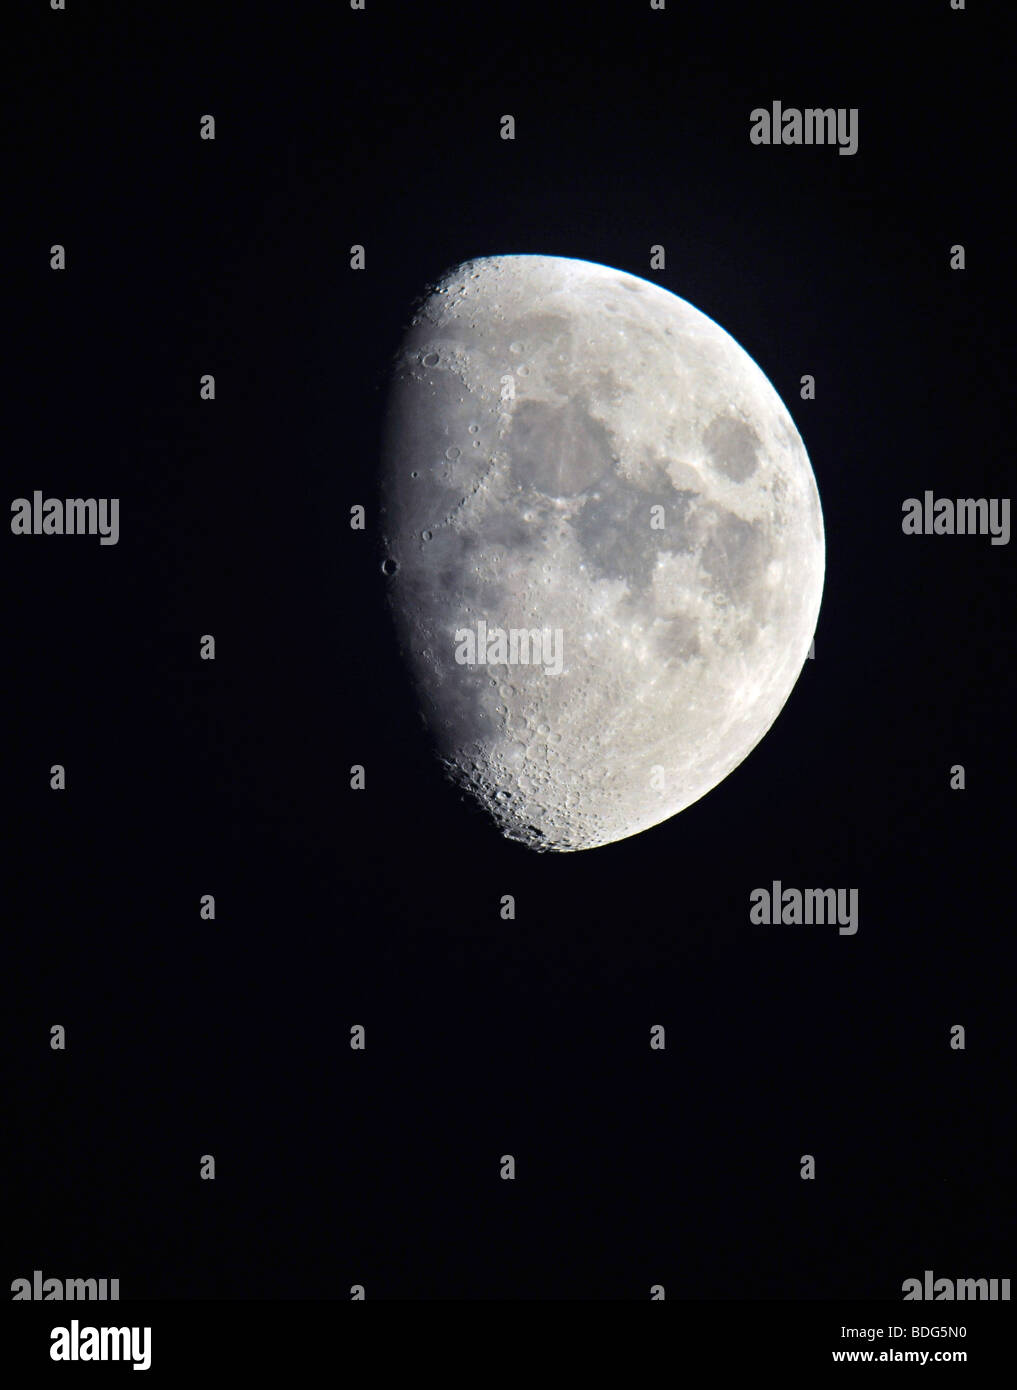 Moon, lunar crater, close-up Stock Photo